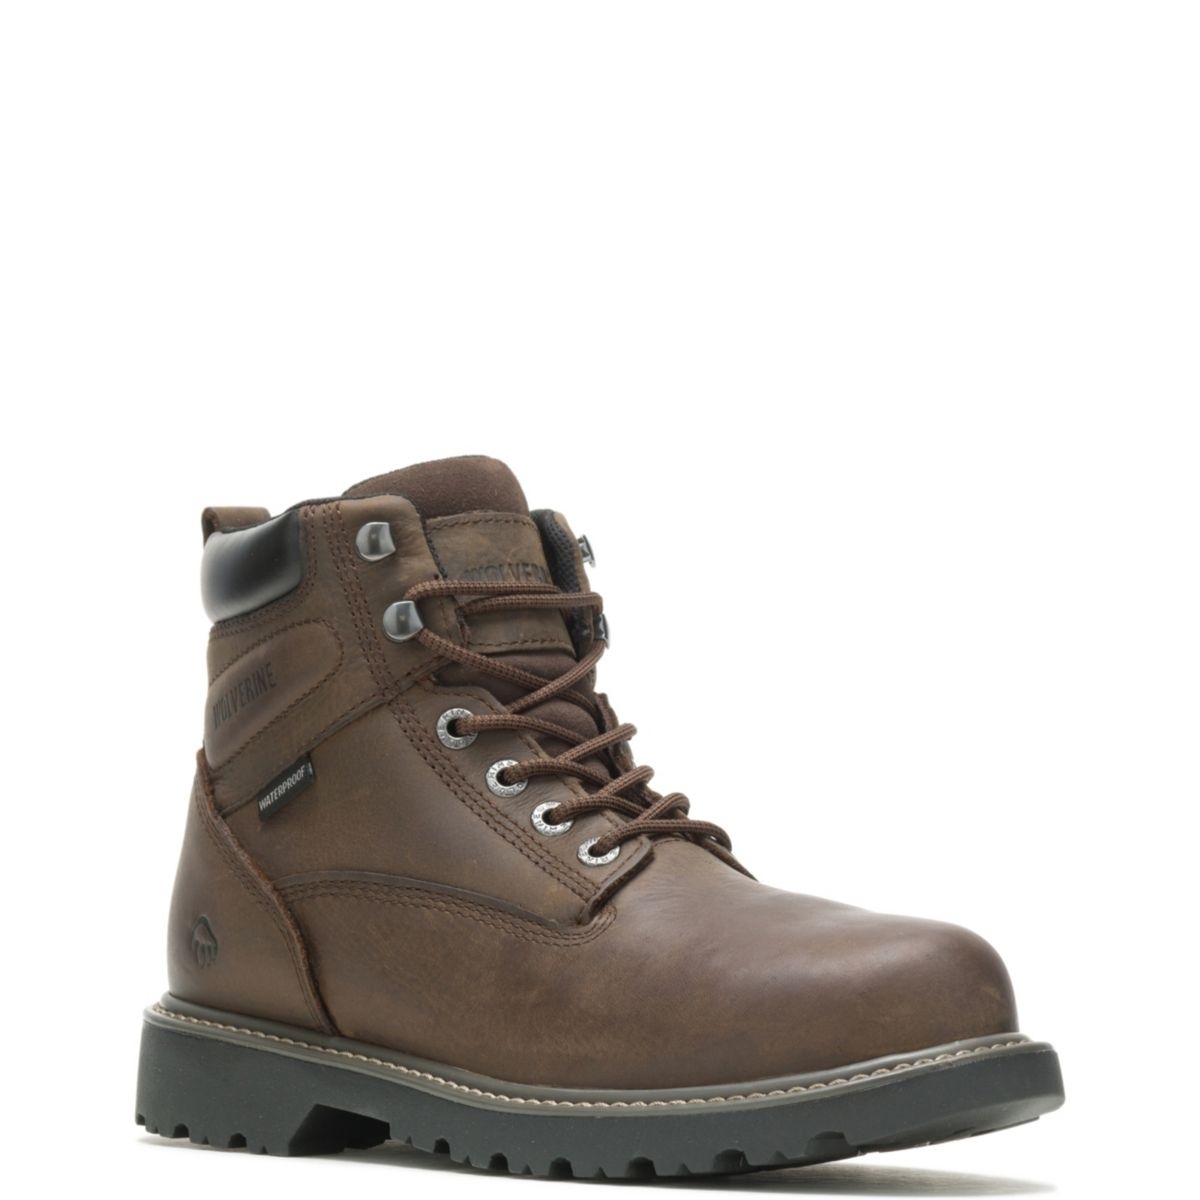 WOLVERINE Men's Floorhand 6 Waterproof Steel Toe Work Boot Dark Brown - W10633 DARK BROWN - DARK BROWN, 9.5-M